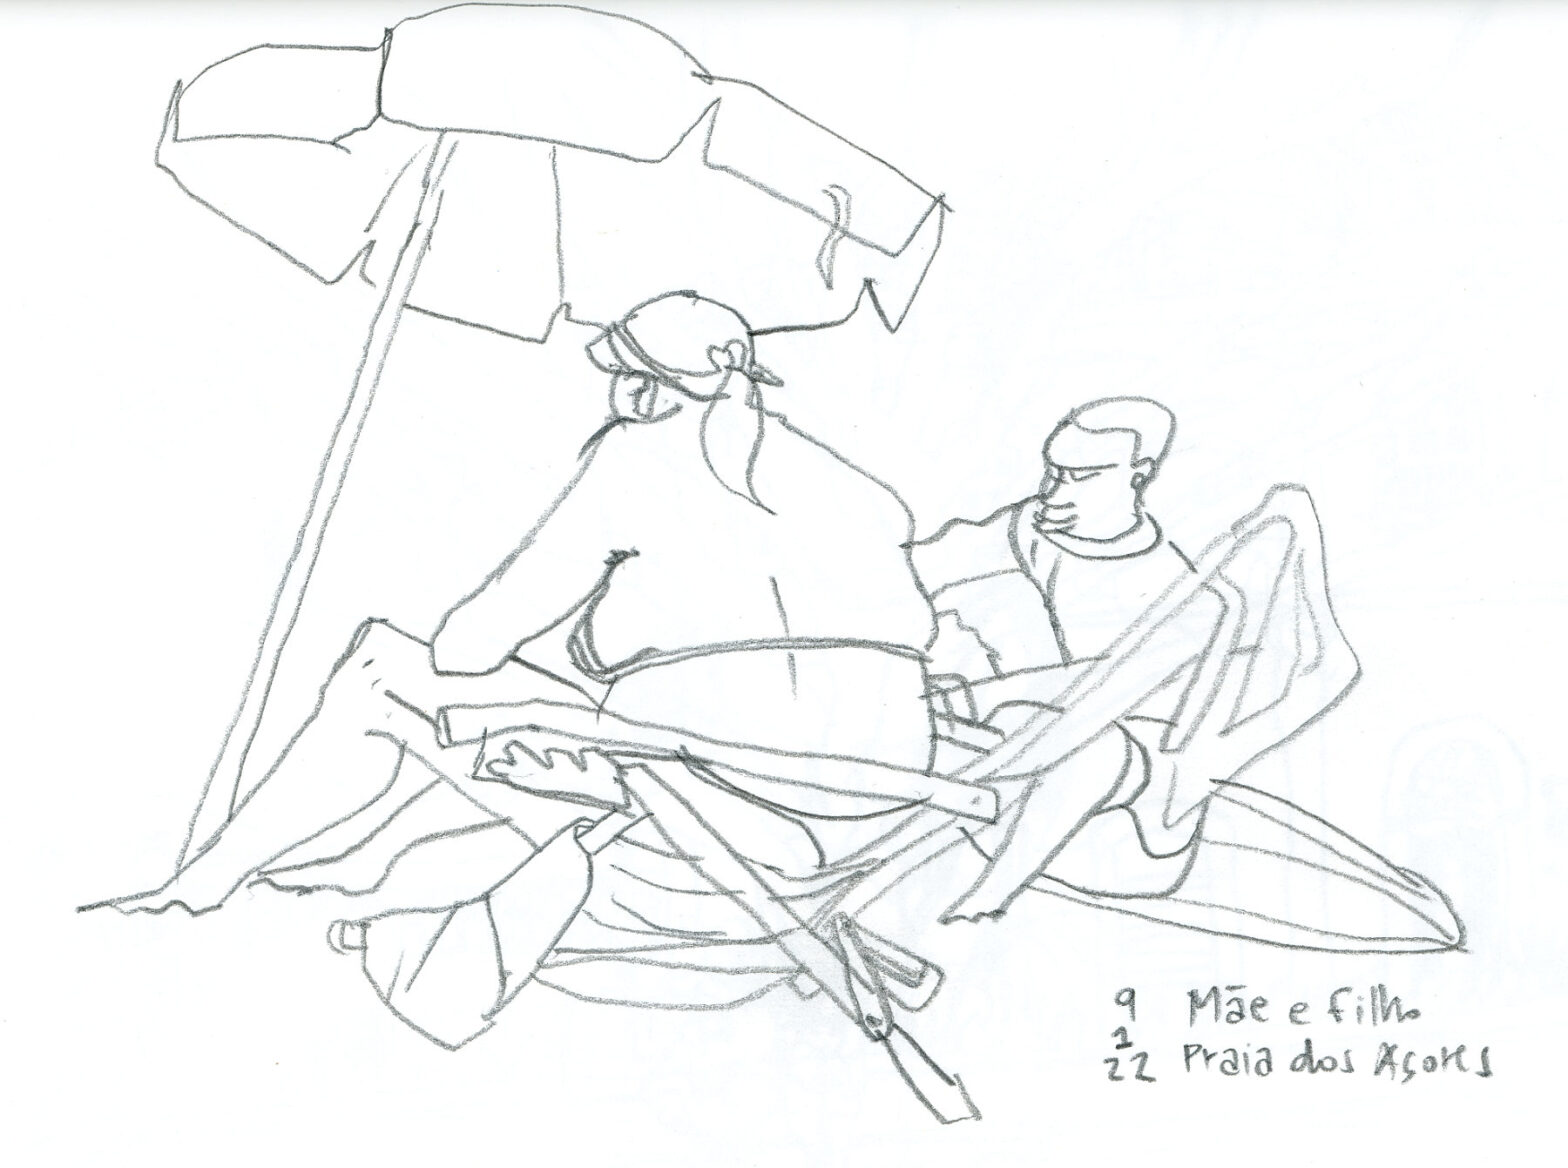 Desenho a lápis: mulher sentada em uma cadeira de praia sob um guarda-sol. Ao lado, um rapaz sentado em uma prancha de surf